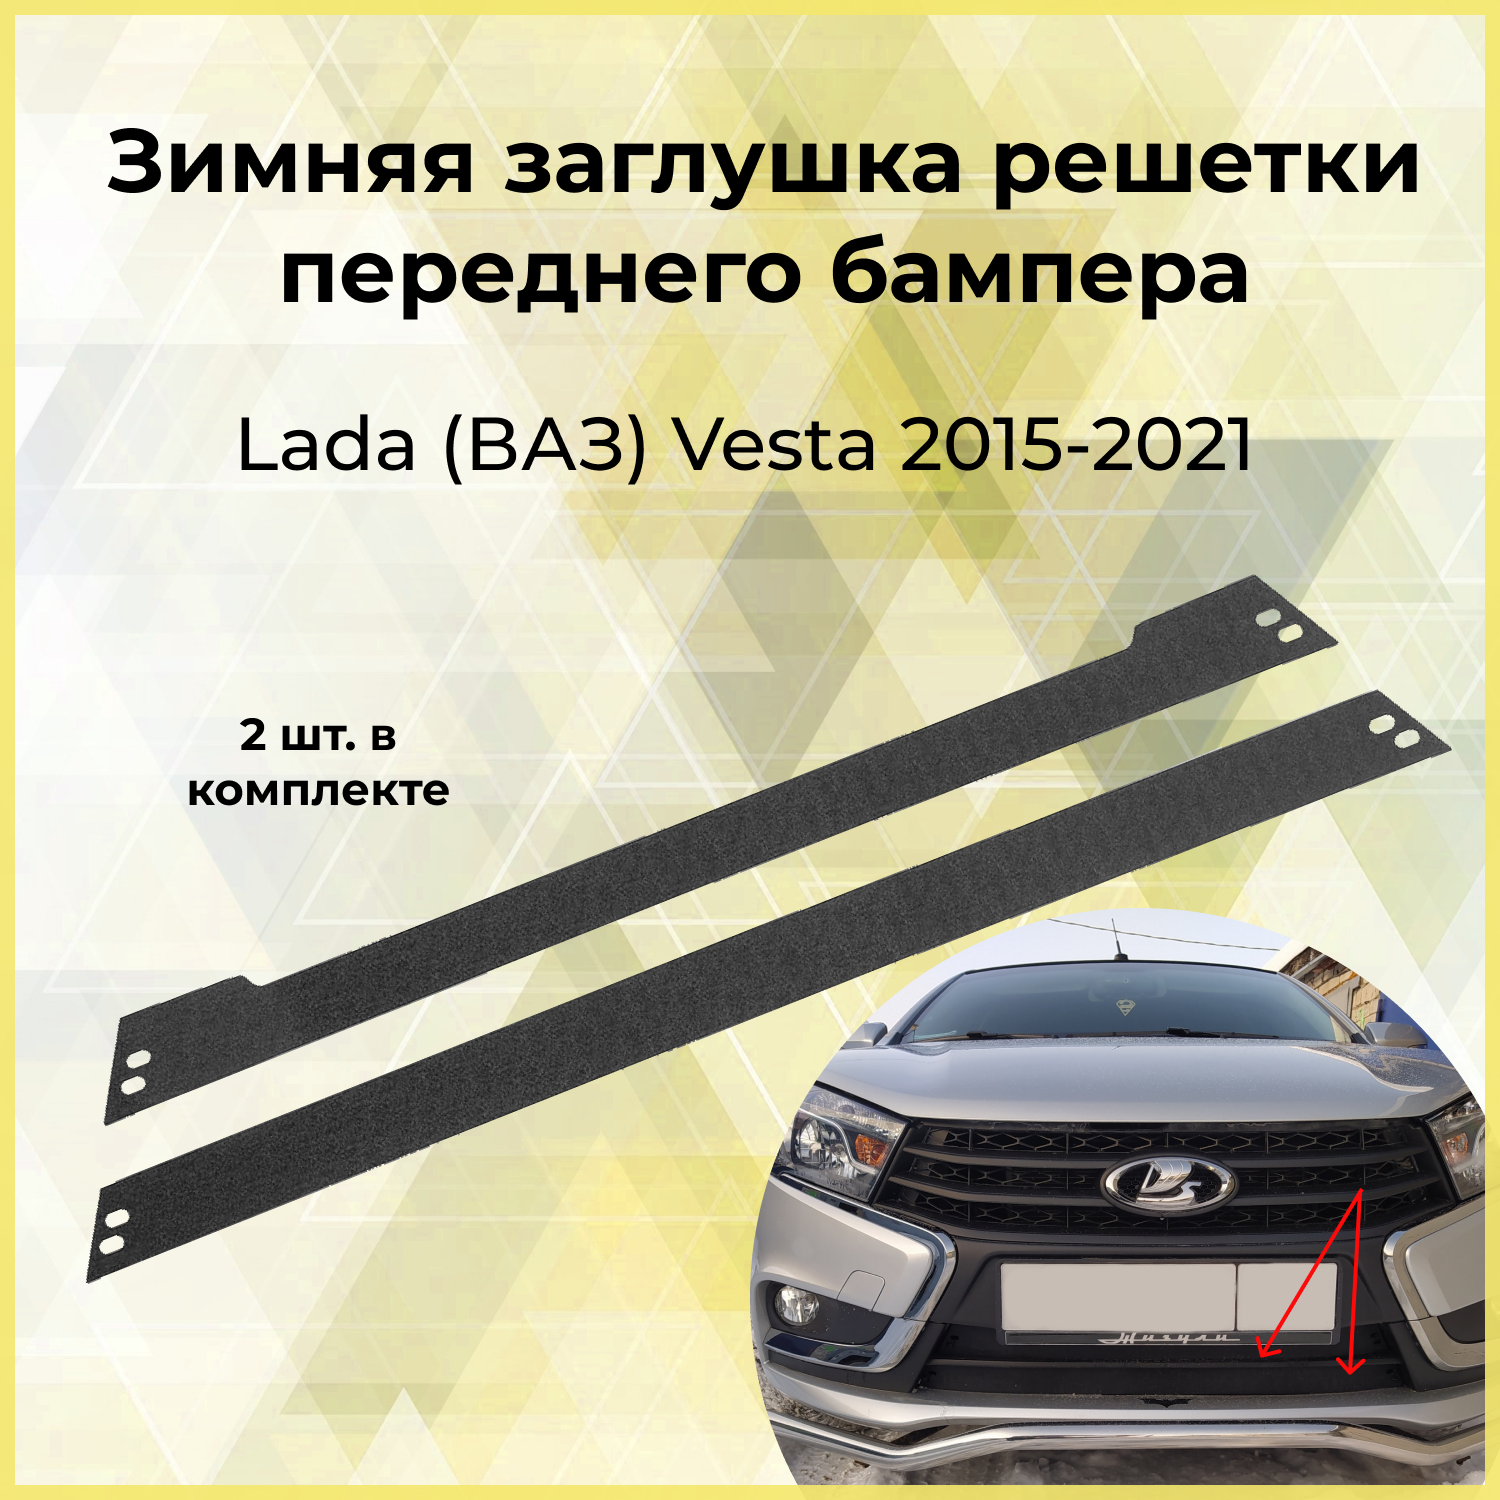 Зимняя заглушка решётки переднего бампера Lada (ВАЗ) Vesta 2015 - 2021